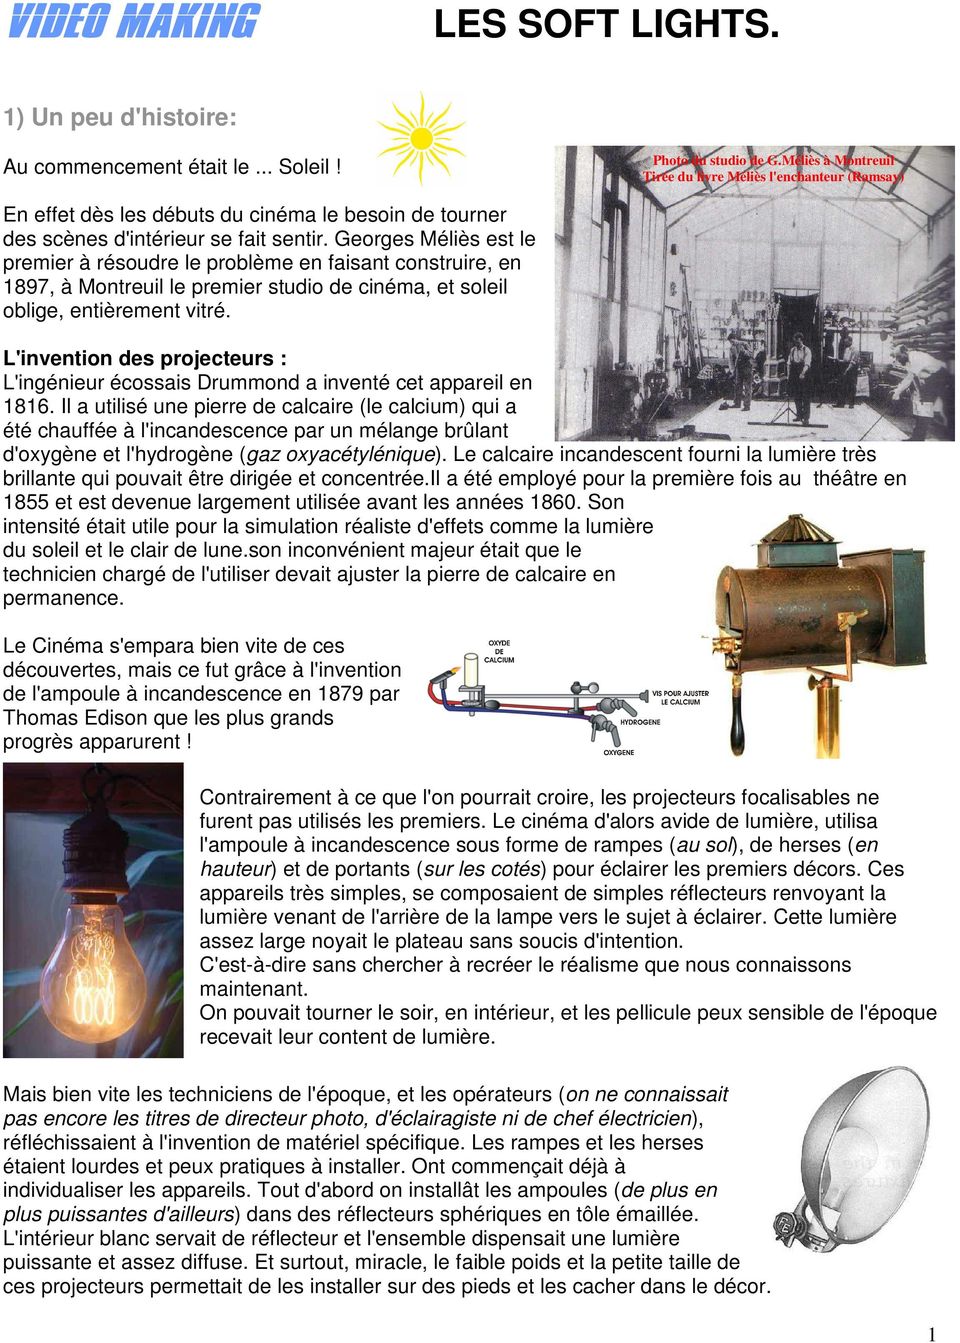 Georges Méliès est le premier à résoudre le problème en faisant construire, en 1897, à Montreuil le premier studio de cinéma, et soleil oblige, entièrement vitré.